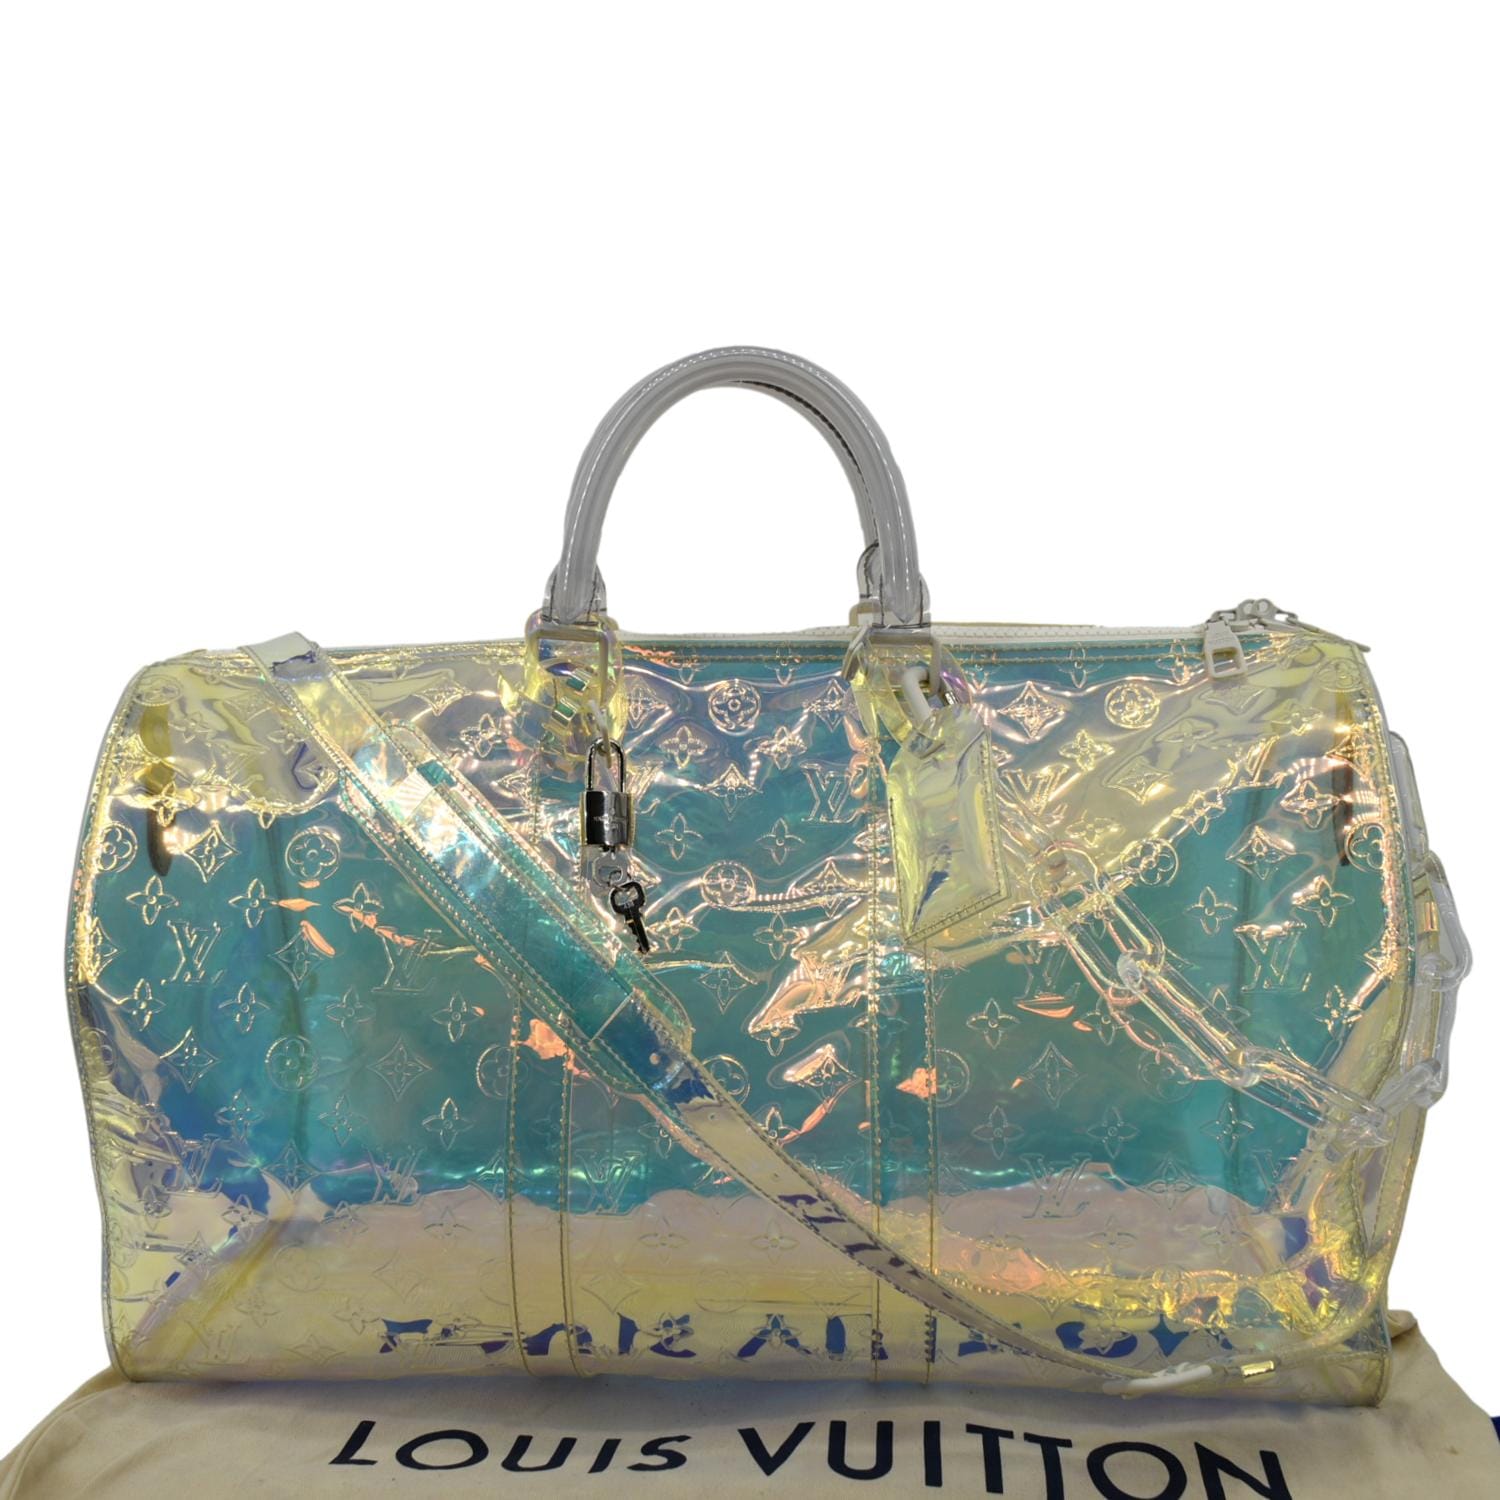 Louis Vuitton Keepall Prism vs Louis Vuitton Keepall Light-Up